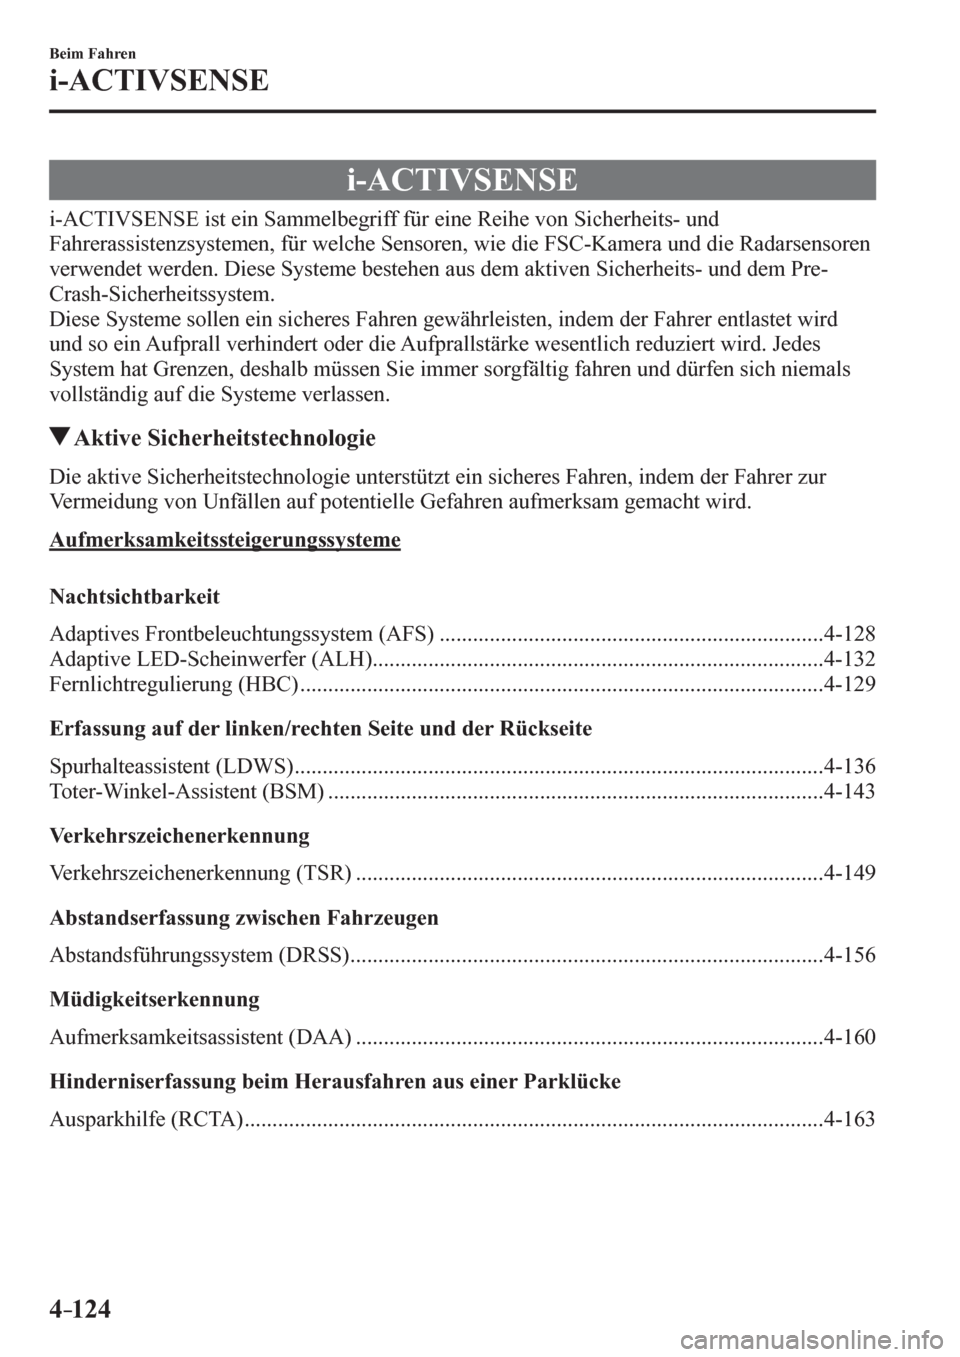 MAZDA MODEL 6 2017  Betriebsanleitung (in German) 4–124
Beim Fahren
i-ACTIVSENSE
      i - A C TIVSENSE
            i - A C T I V S E N S E   i s t   e i n   Sammelbegriff für eine Reihe von Sicherheits- und 
<00290044004b0055004800550044005600560